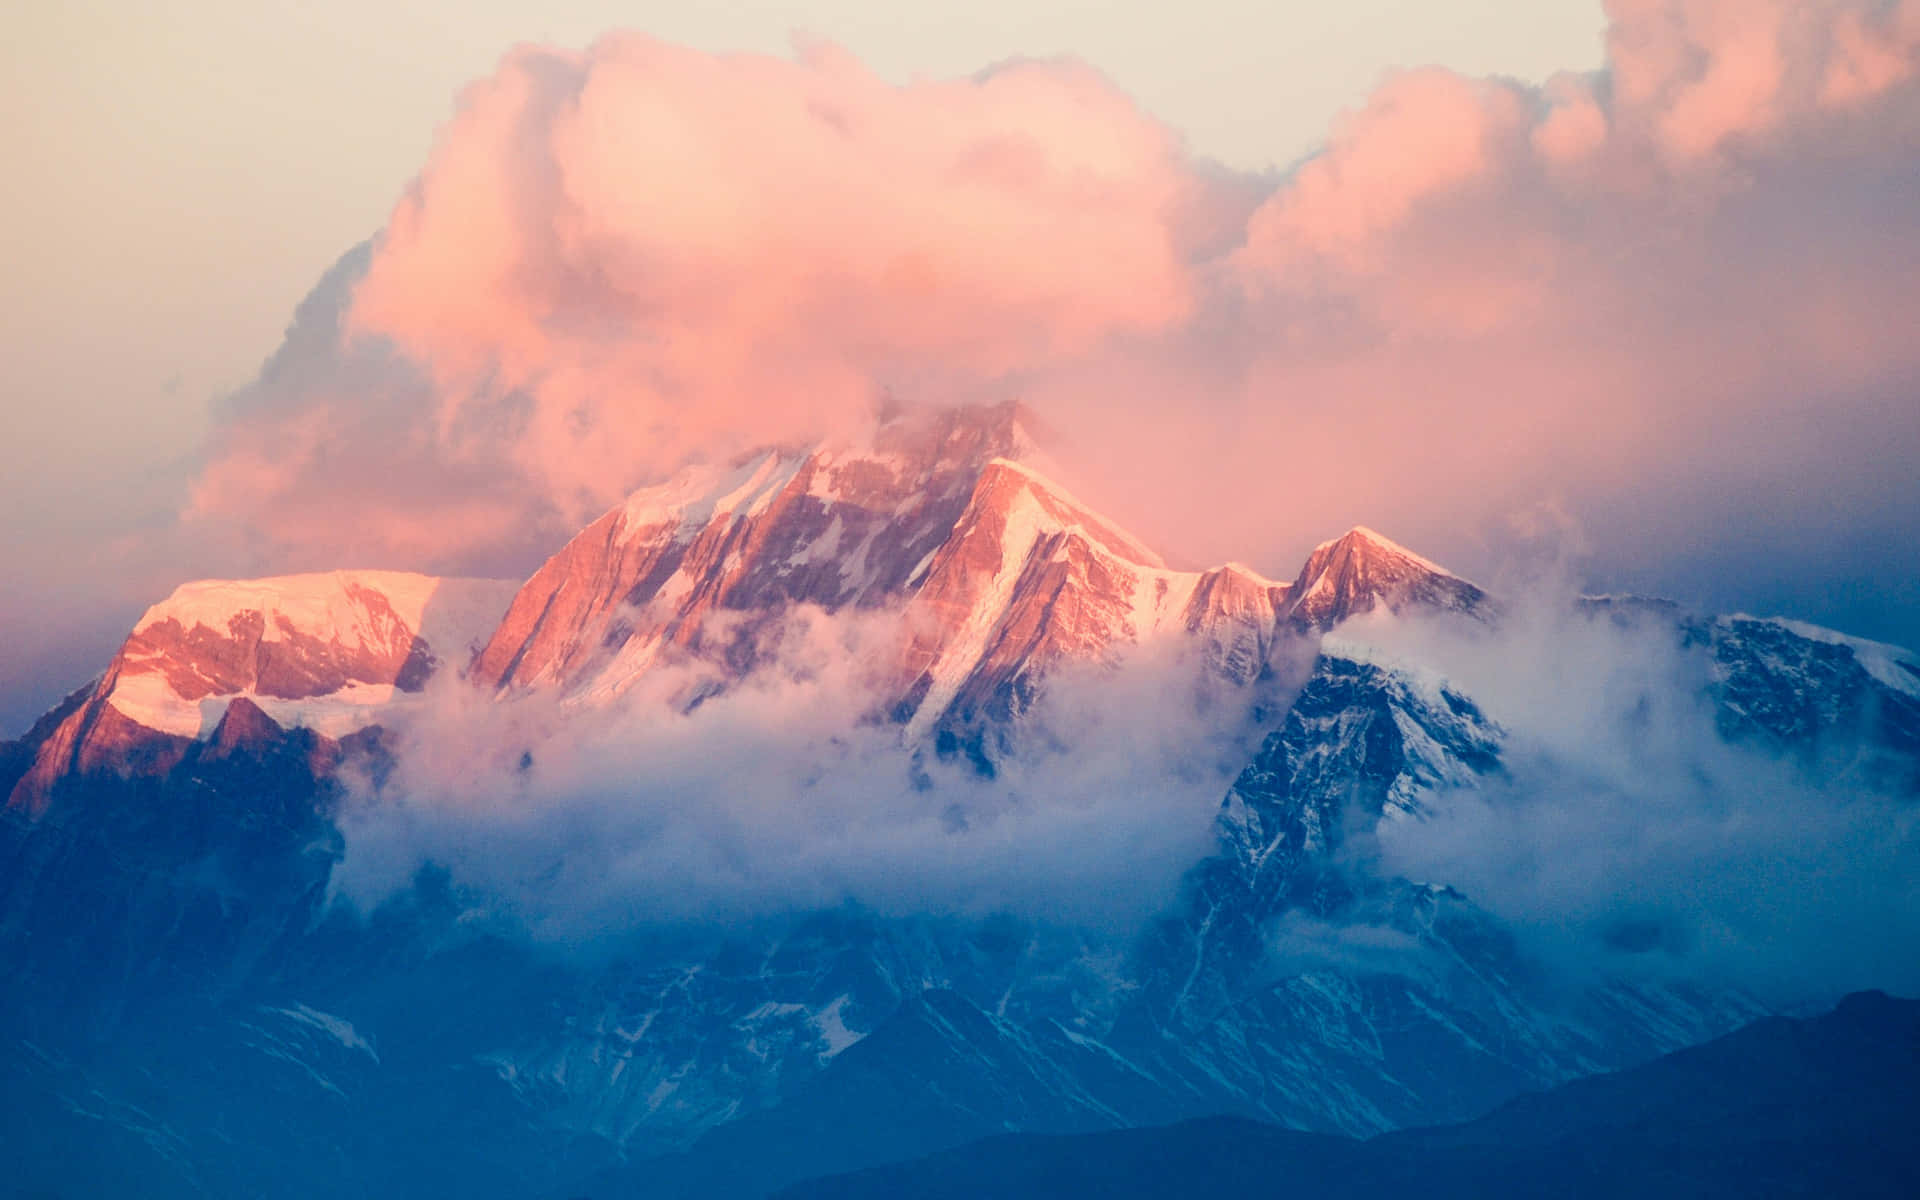 Sunset Alpenglow On Mountain Peaks Wallpaper